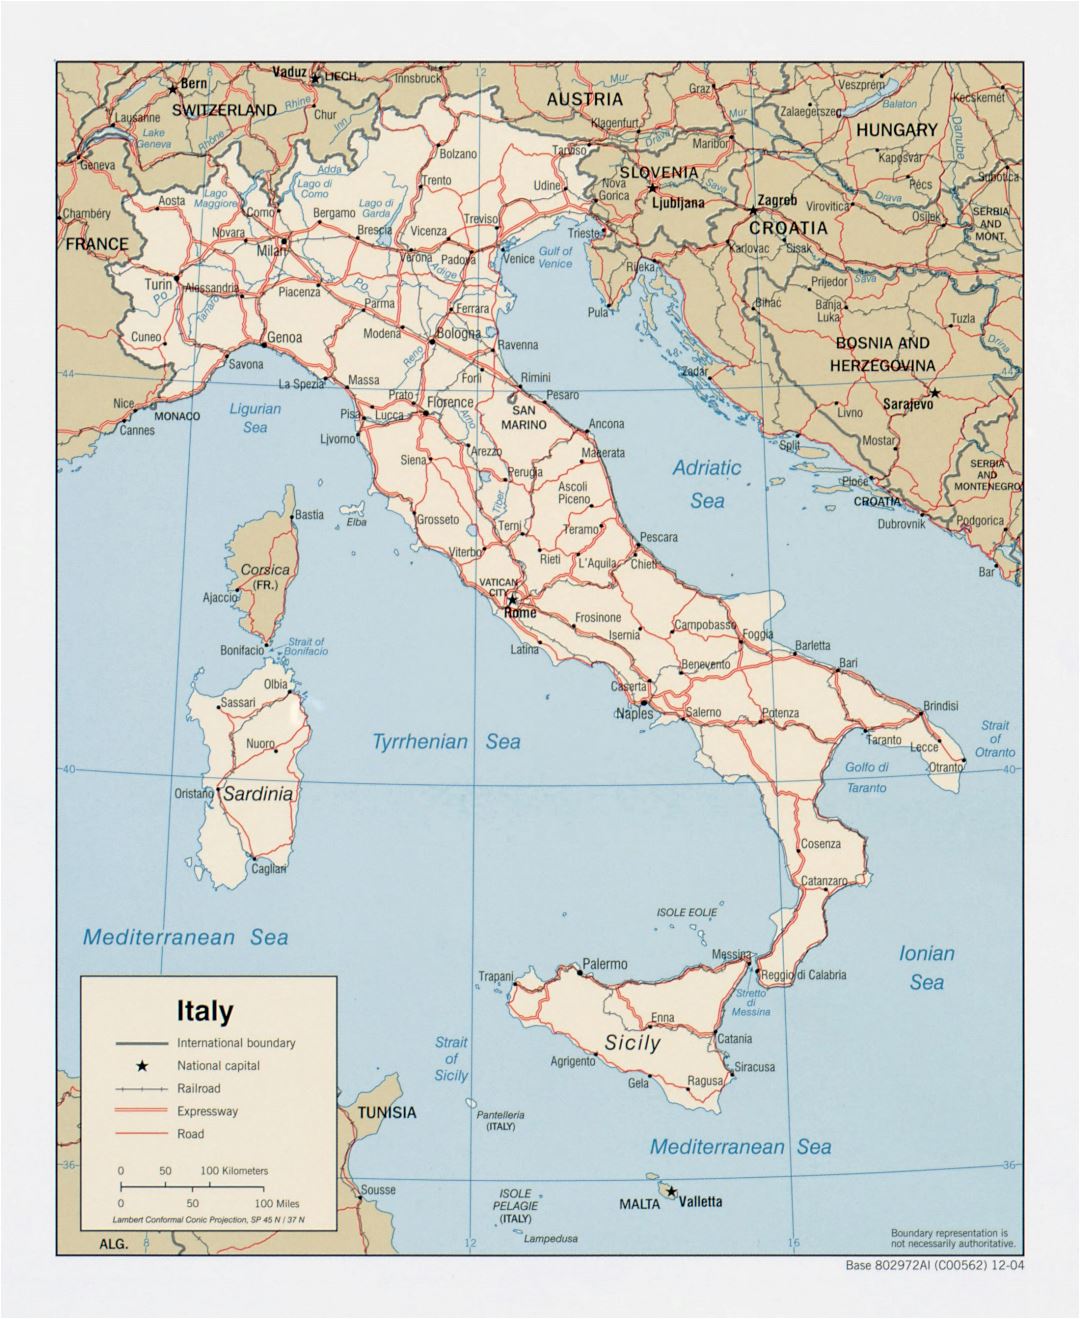 Mapa político a gran escala de Italia, con carreteras, ferrocarriles y las principales ciudades - 2004